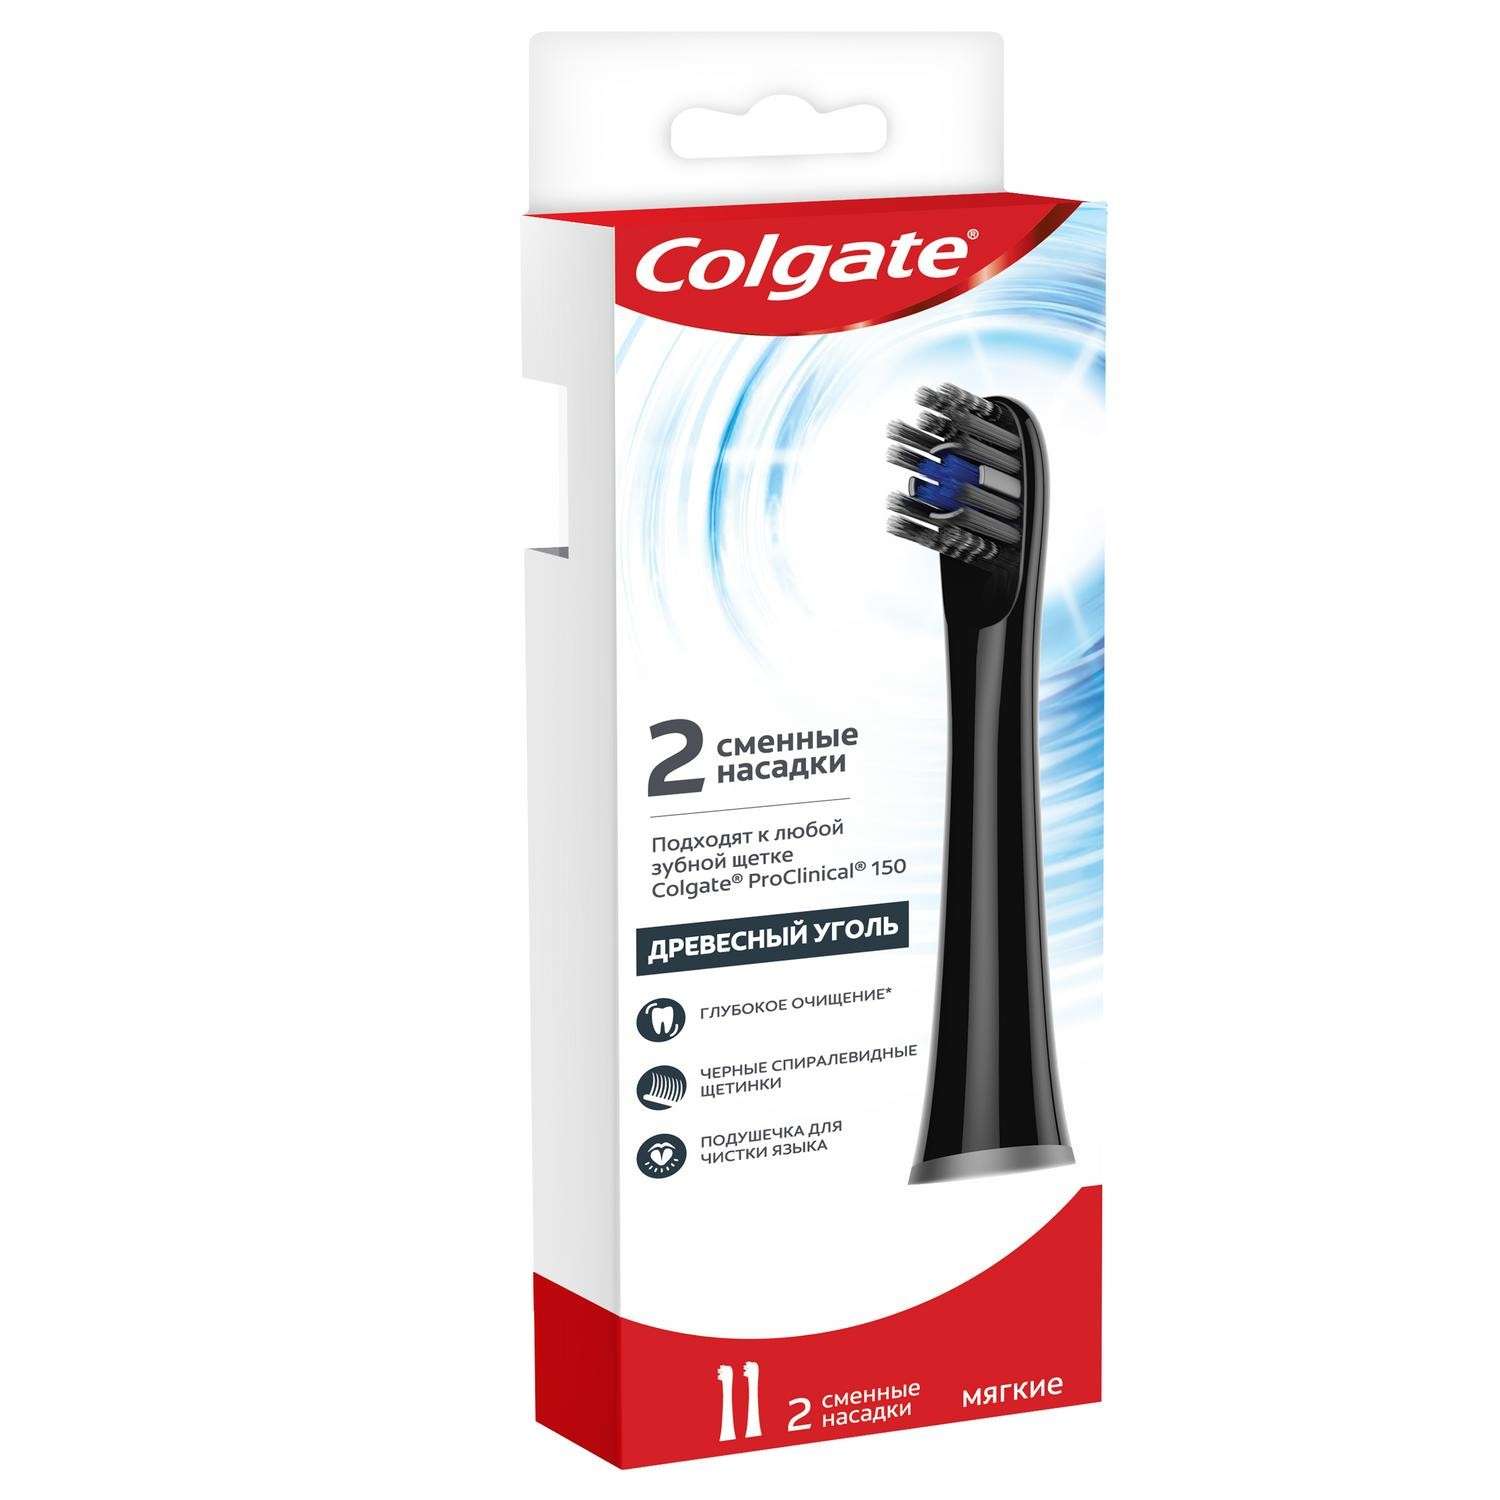 Насадки для зубной щетки Colgate Pro Сlinical 150 Древесный Уголь мягкие сменные 2шт Черные - фото 2